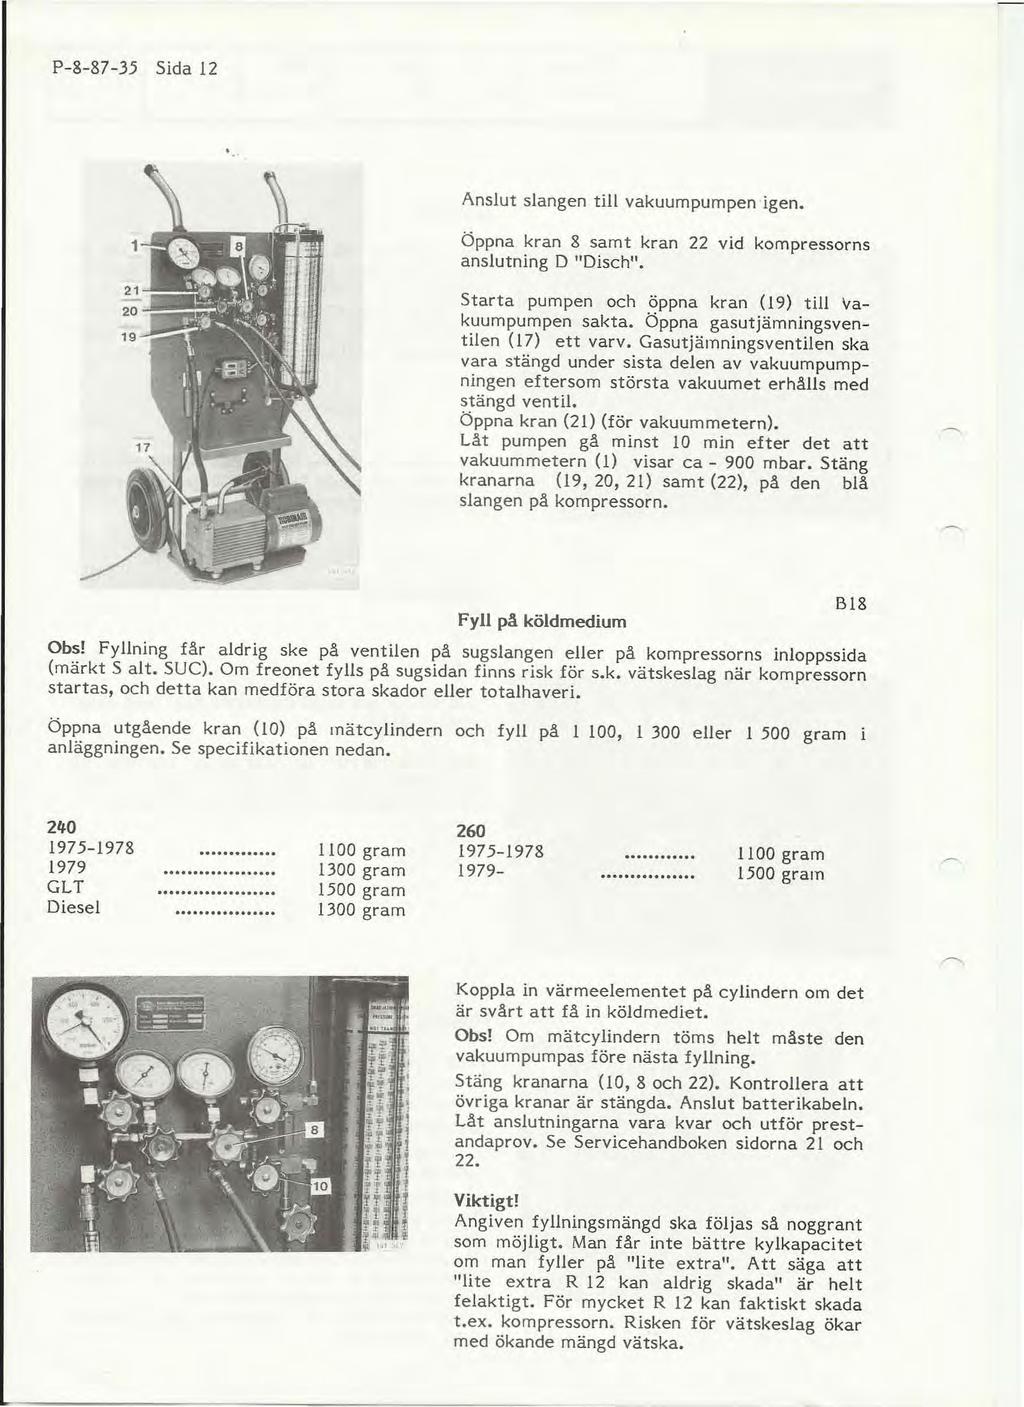 P-8-87-35 Sida 12.. Anslut slangen till vakuumpumpen igen. Öppna kran 8 samt kran 22 vid kompressorns anslutning D "Disch" Starta pumpen och.öppna kran (19) till vakuumpumpen sakta.